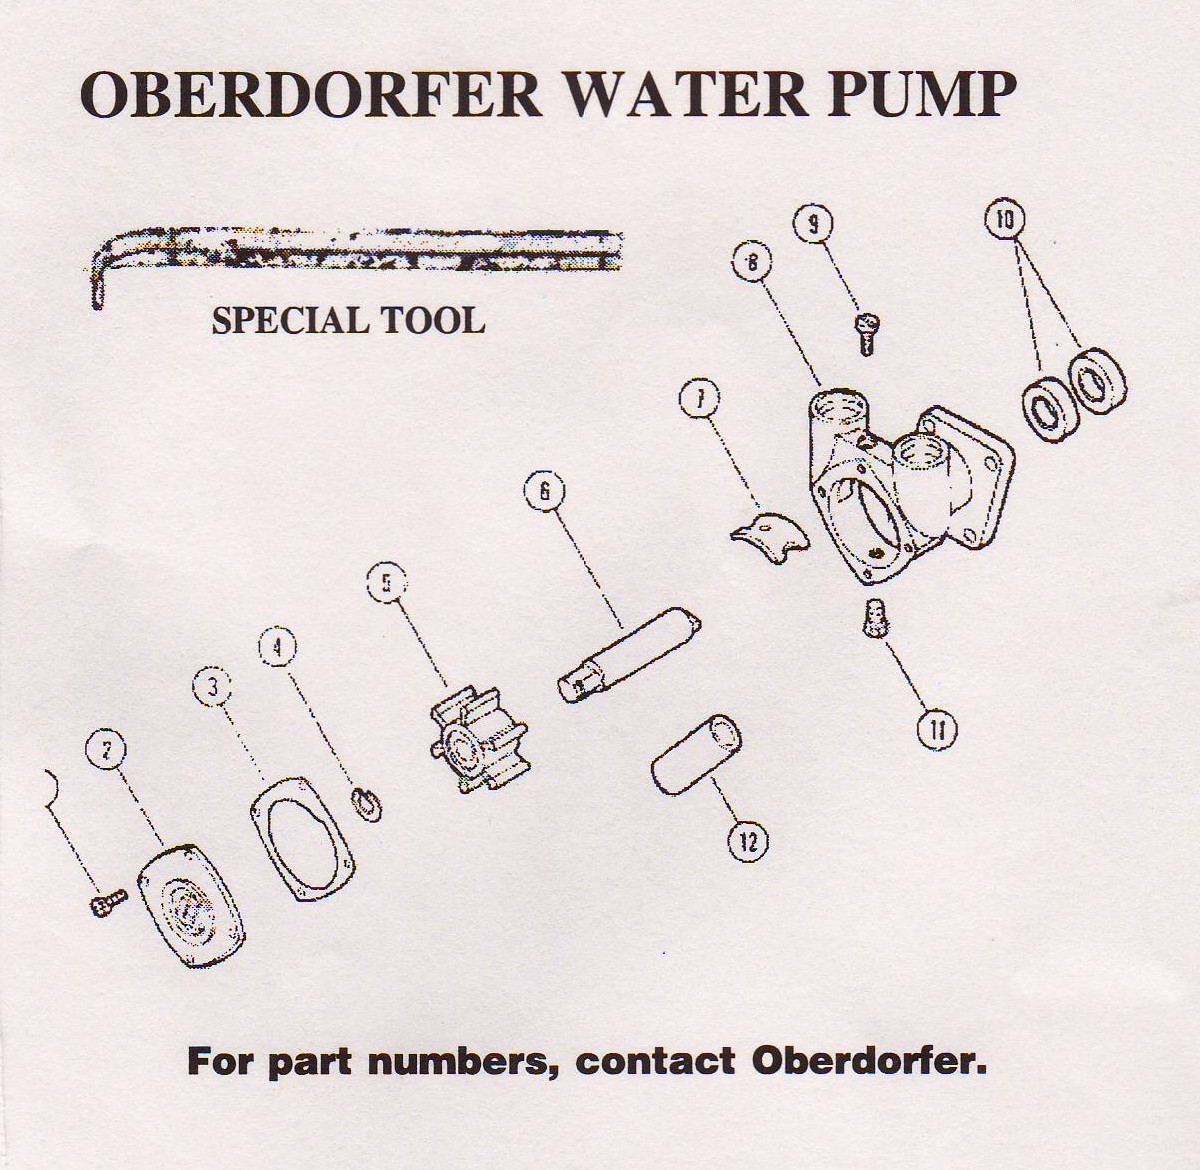 Oberdorfer pump diagram.JPG